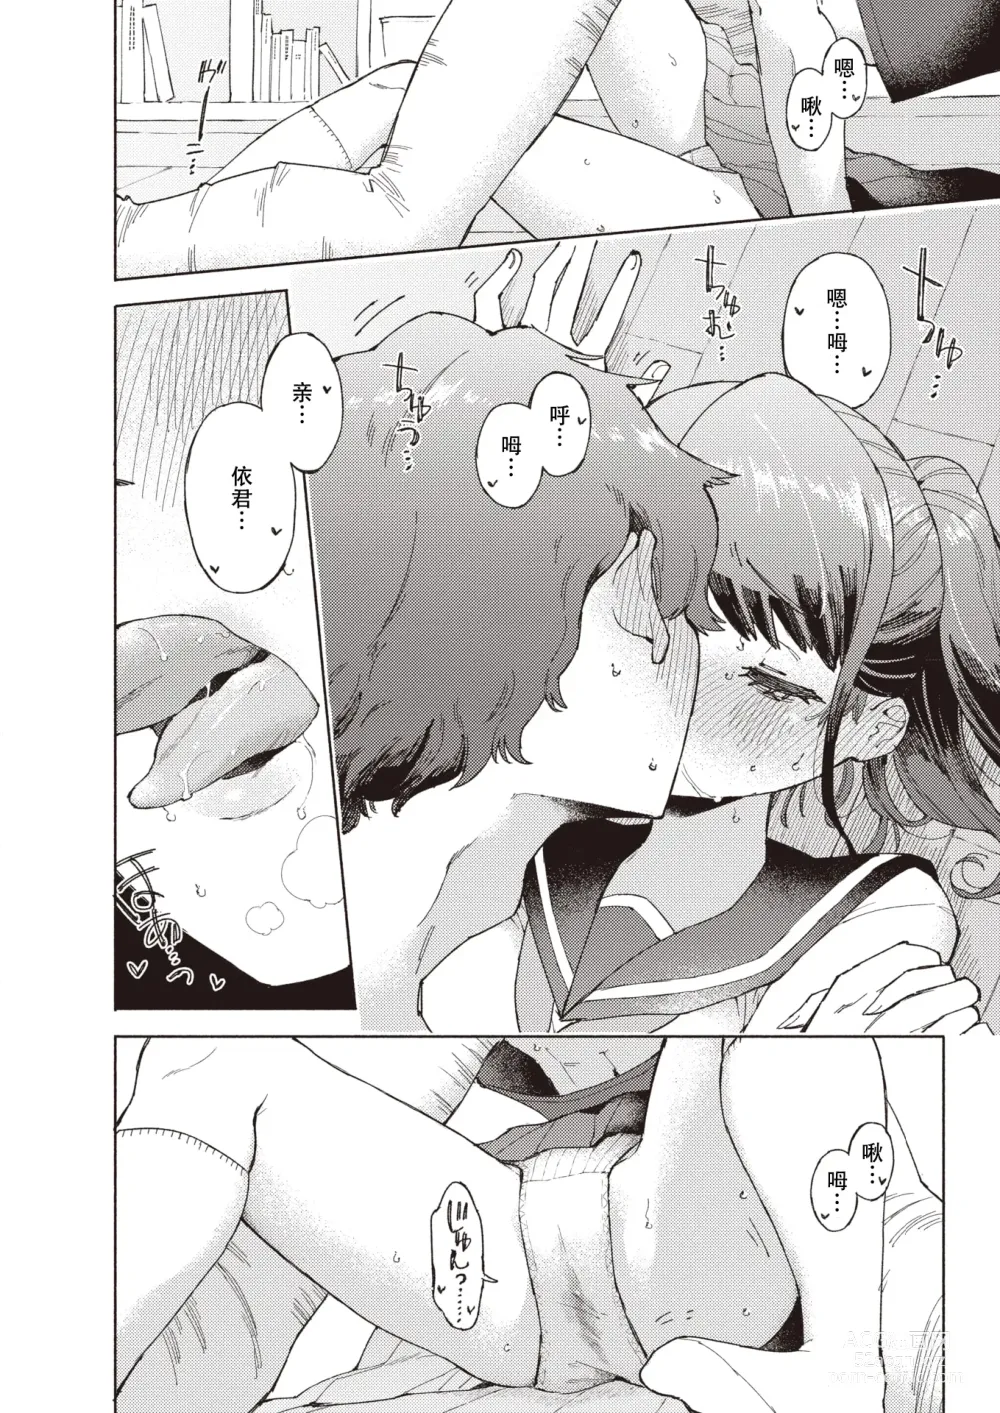 Page 12 of manga 标记